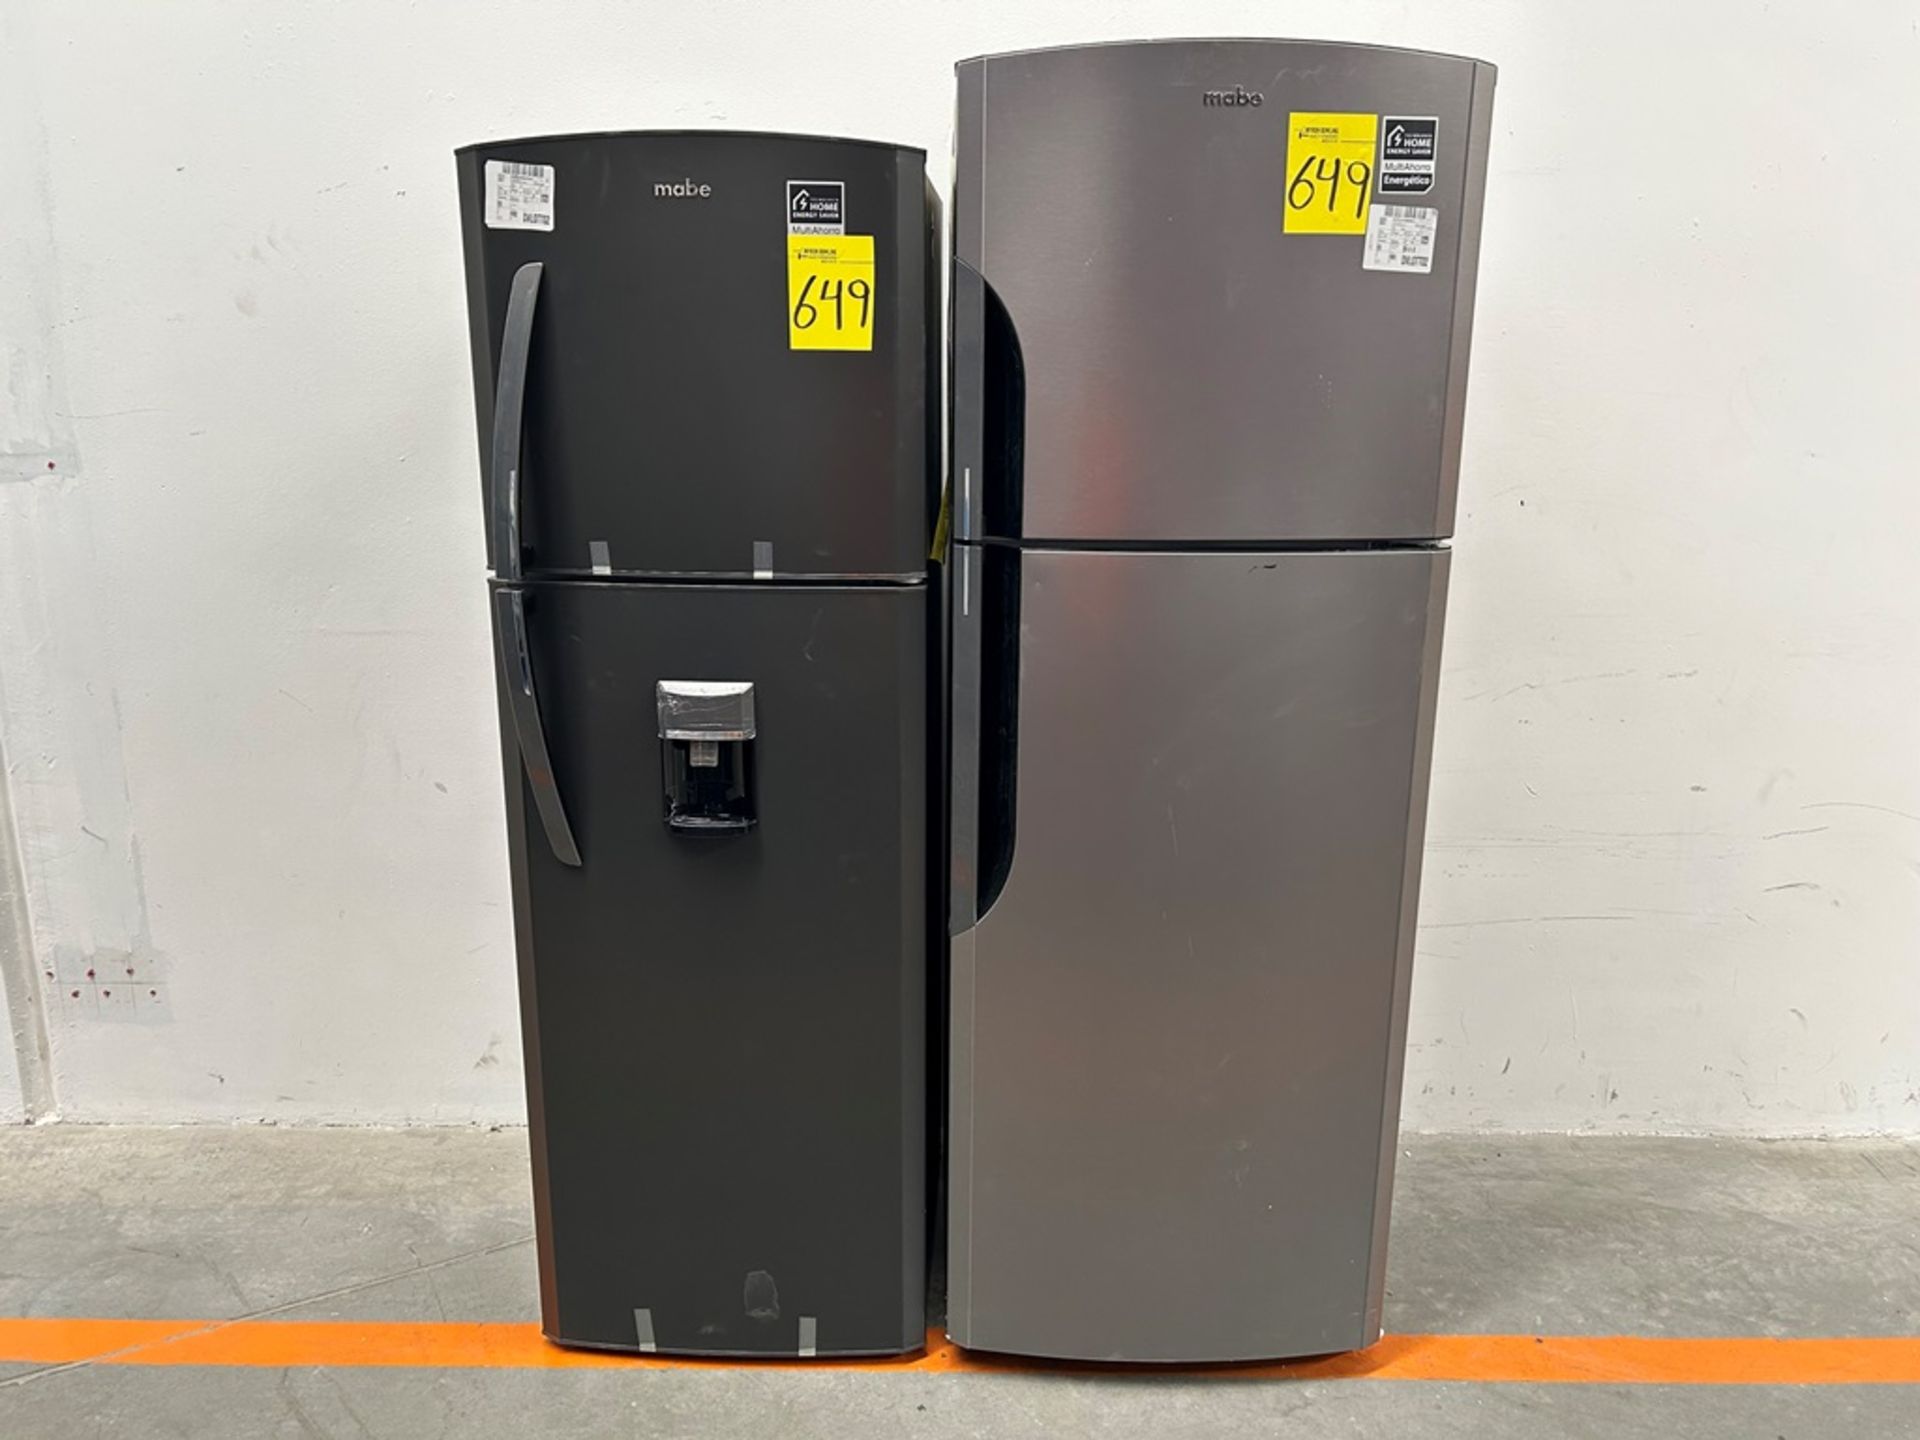 Lote de 2 refrigeradores contiene:1 refrigerador Marca MABE, Modelo RMS400IVMRMA, Serie 03009, Colo